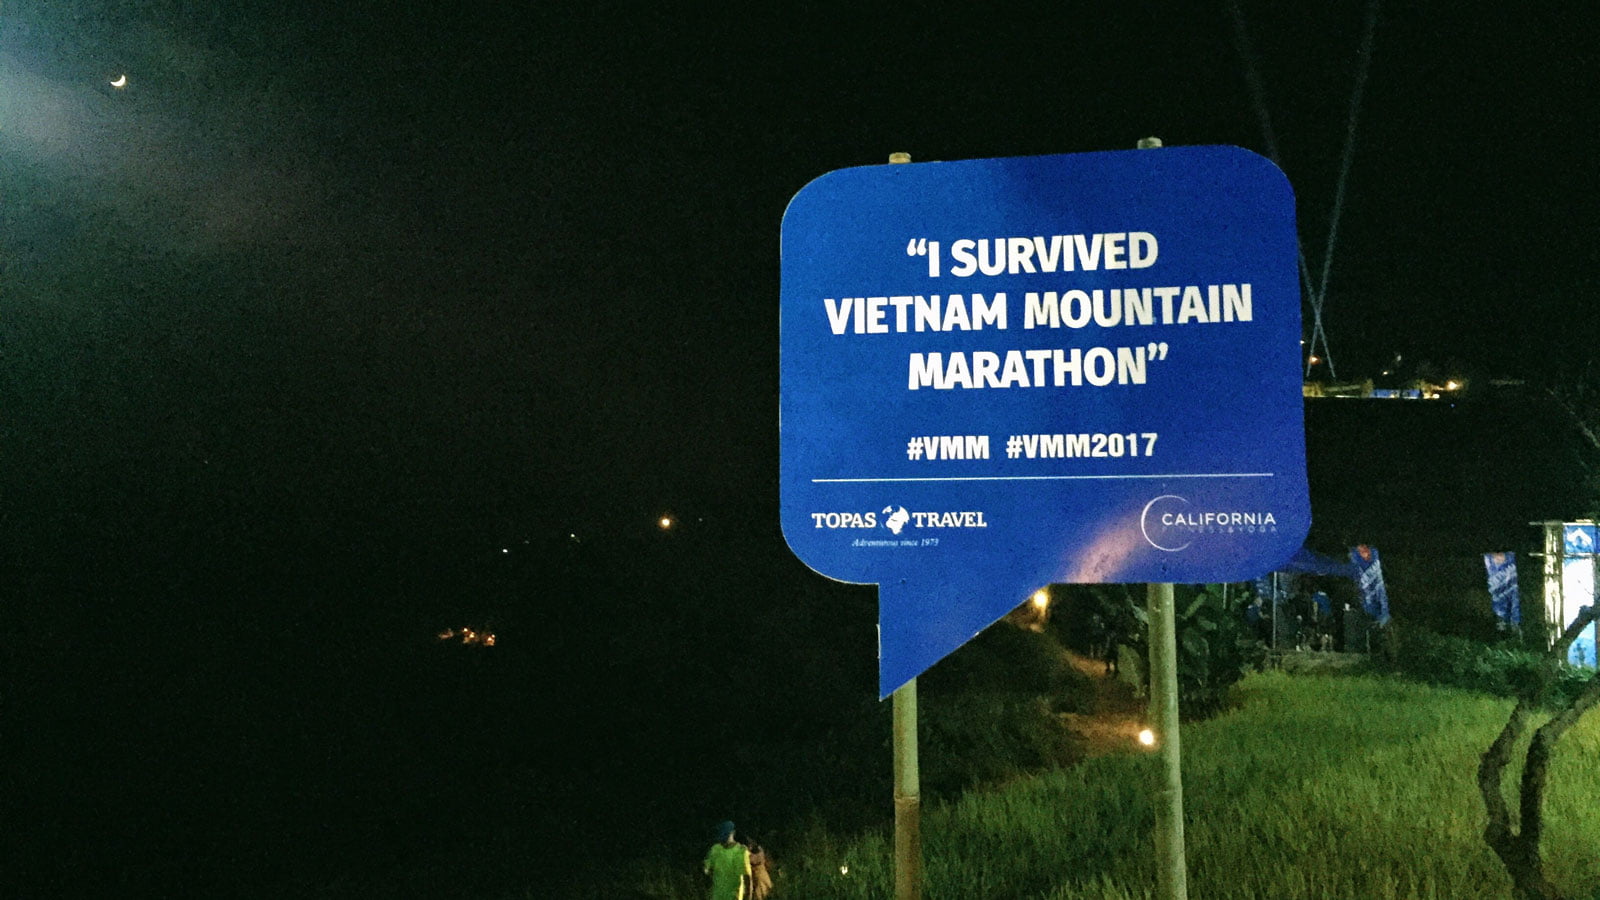 Kí sự VMM 2017 [Phần 5] Tui là Marathoner! - vmm 2017 survived